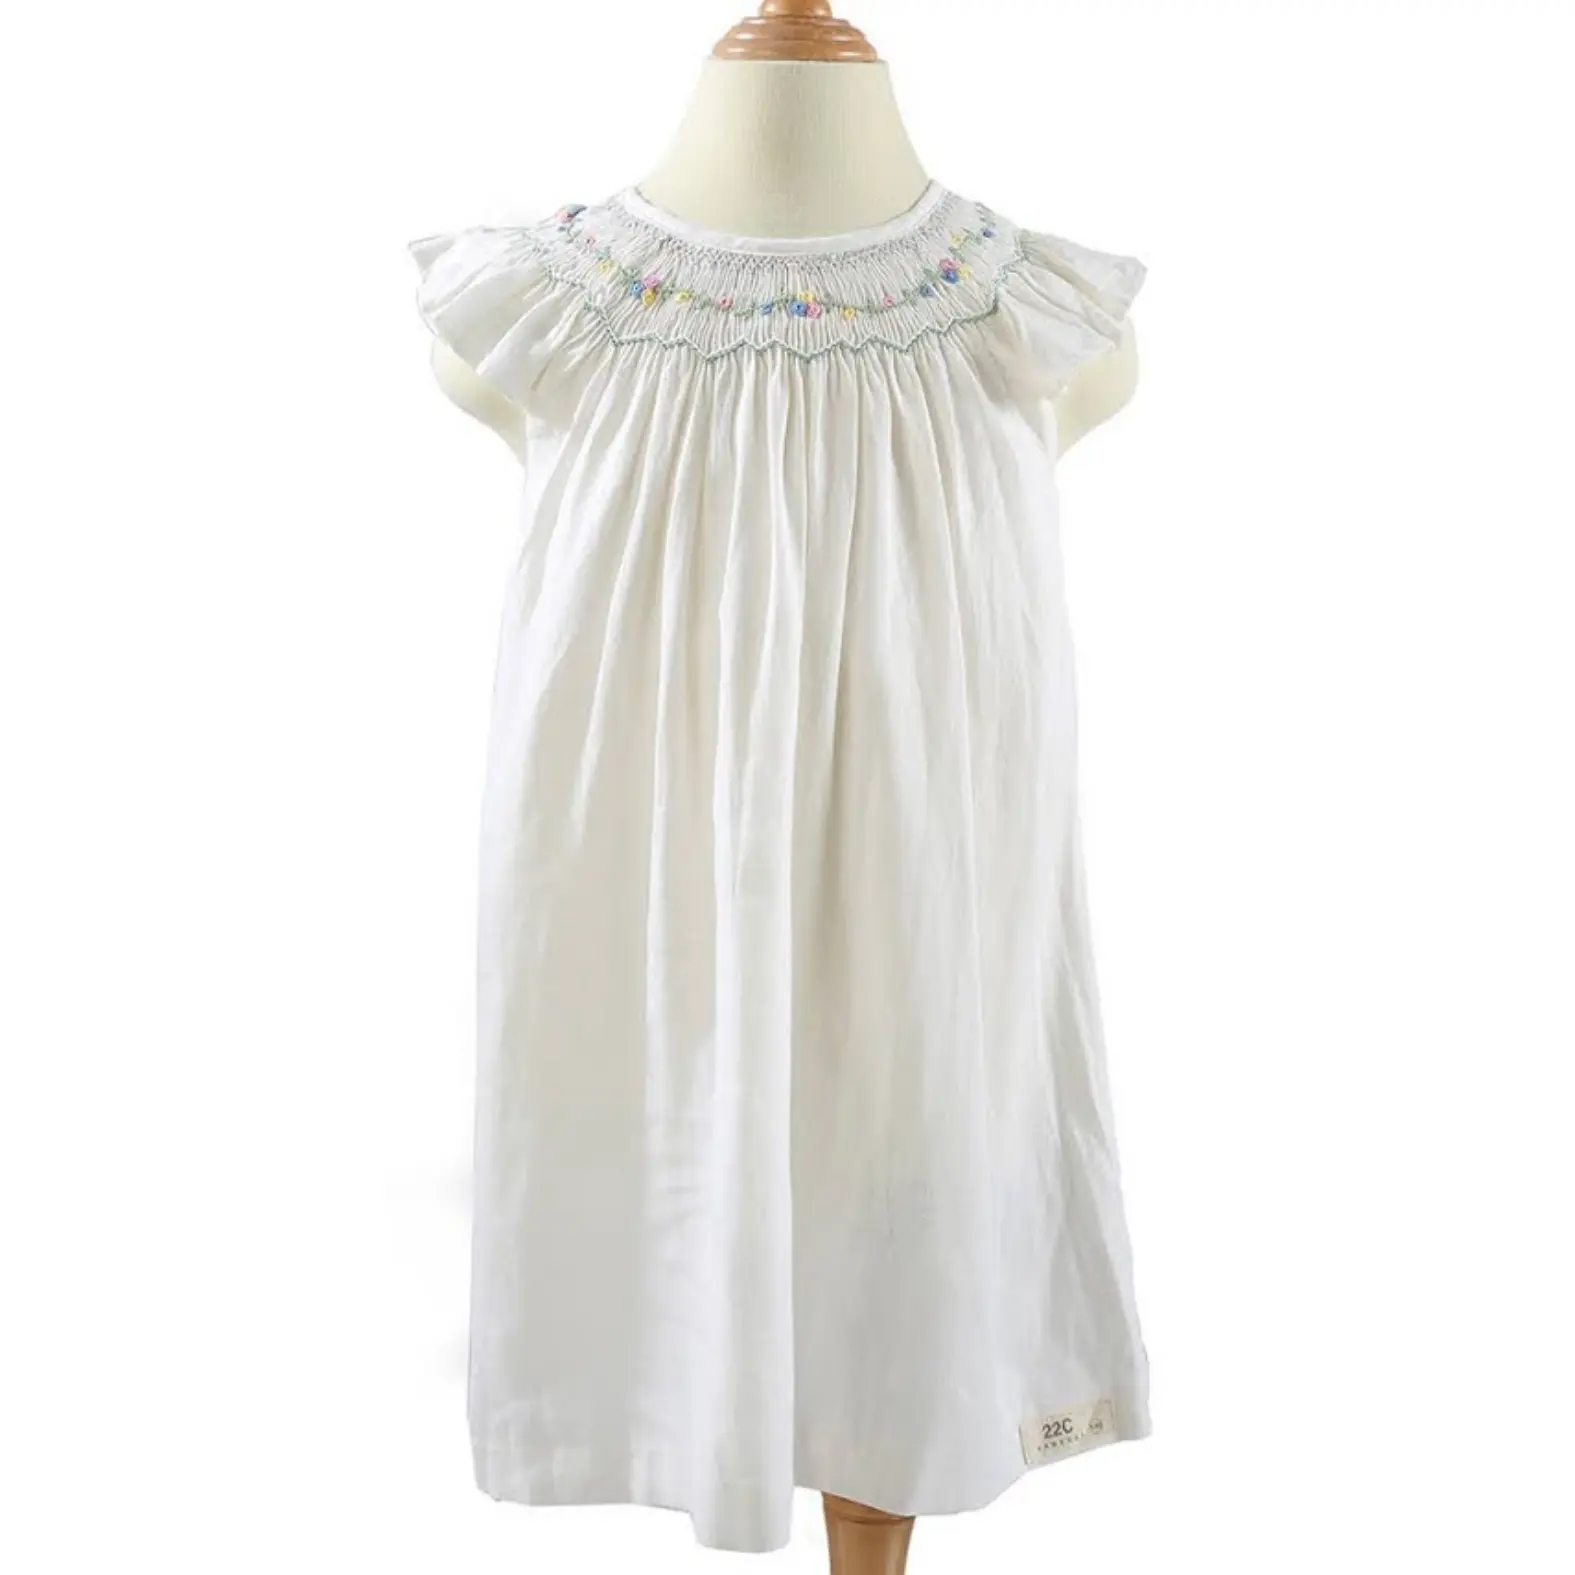 Çocuk giyim kız giyim kız elbise kız önlüklü elbise çocuklar için beyaz kısa pamuk özelleştirilmiş tasarım lüks